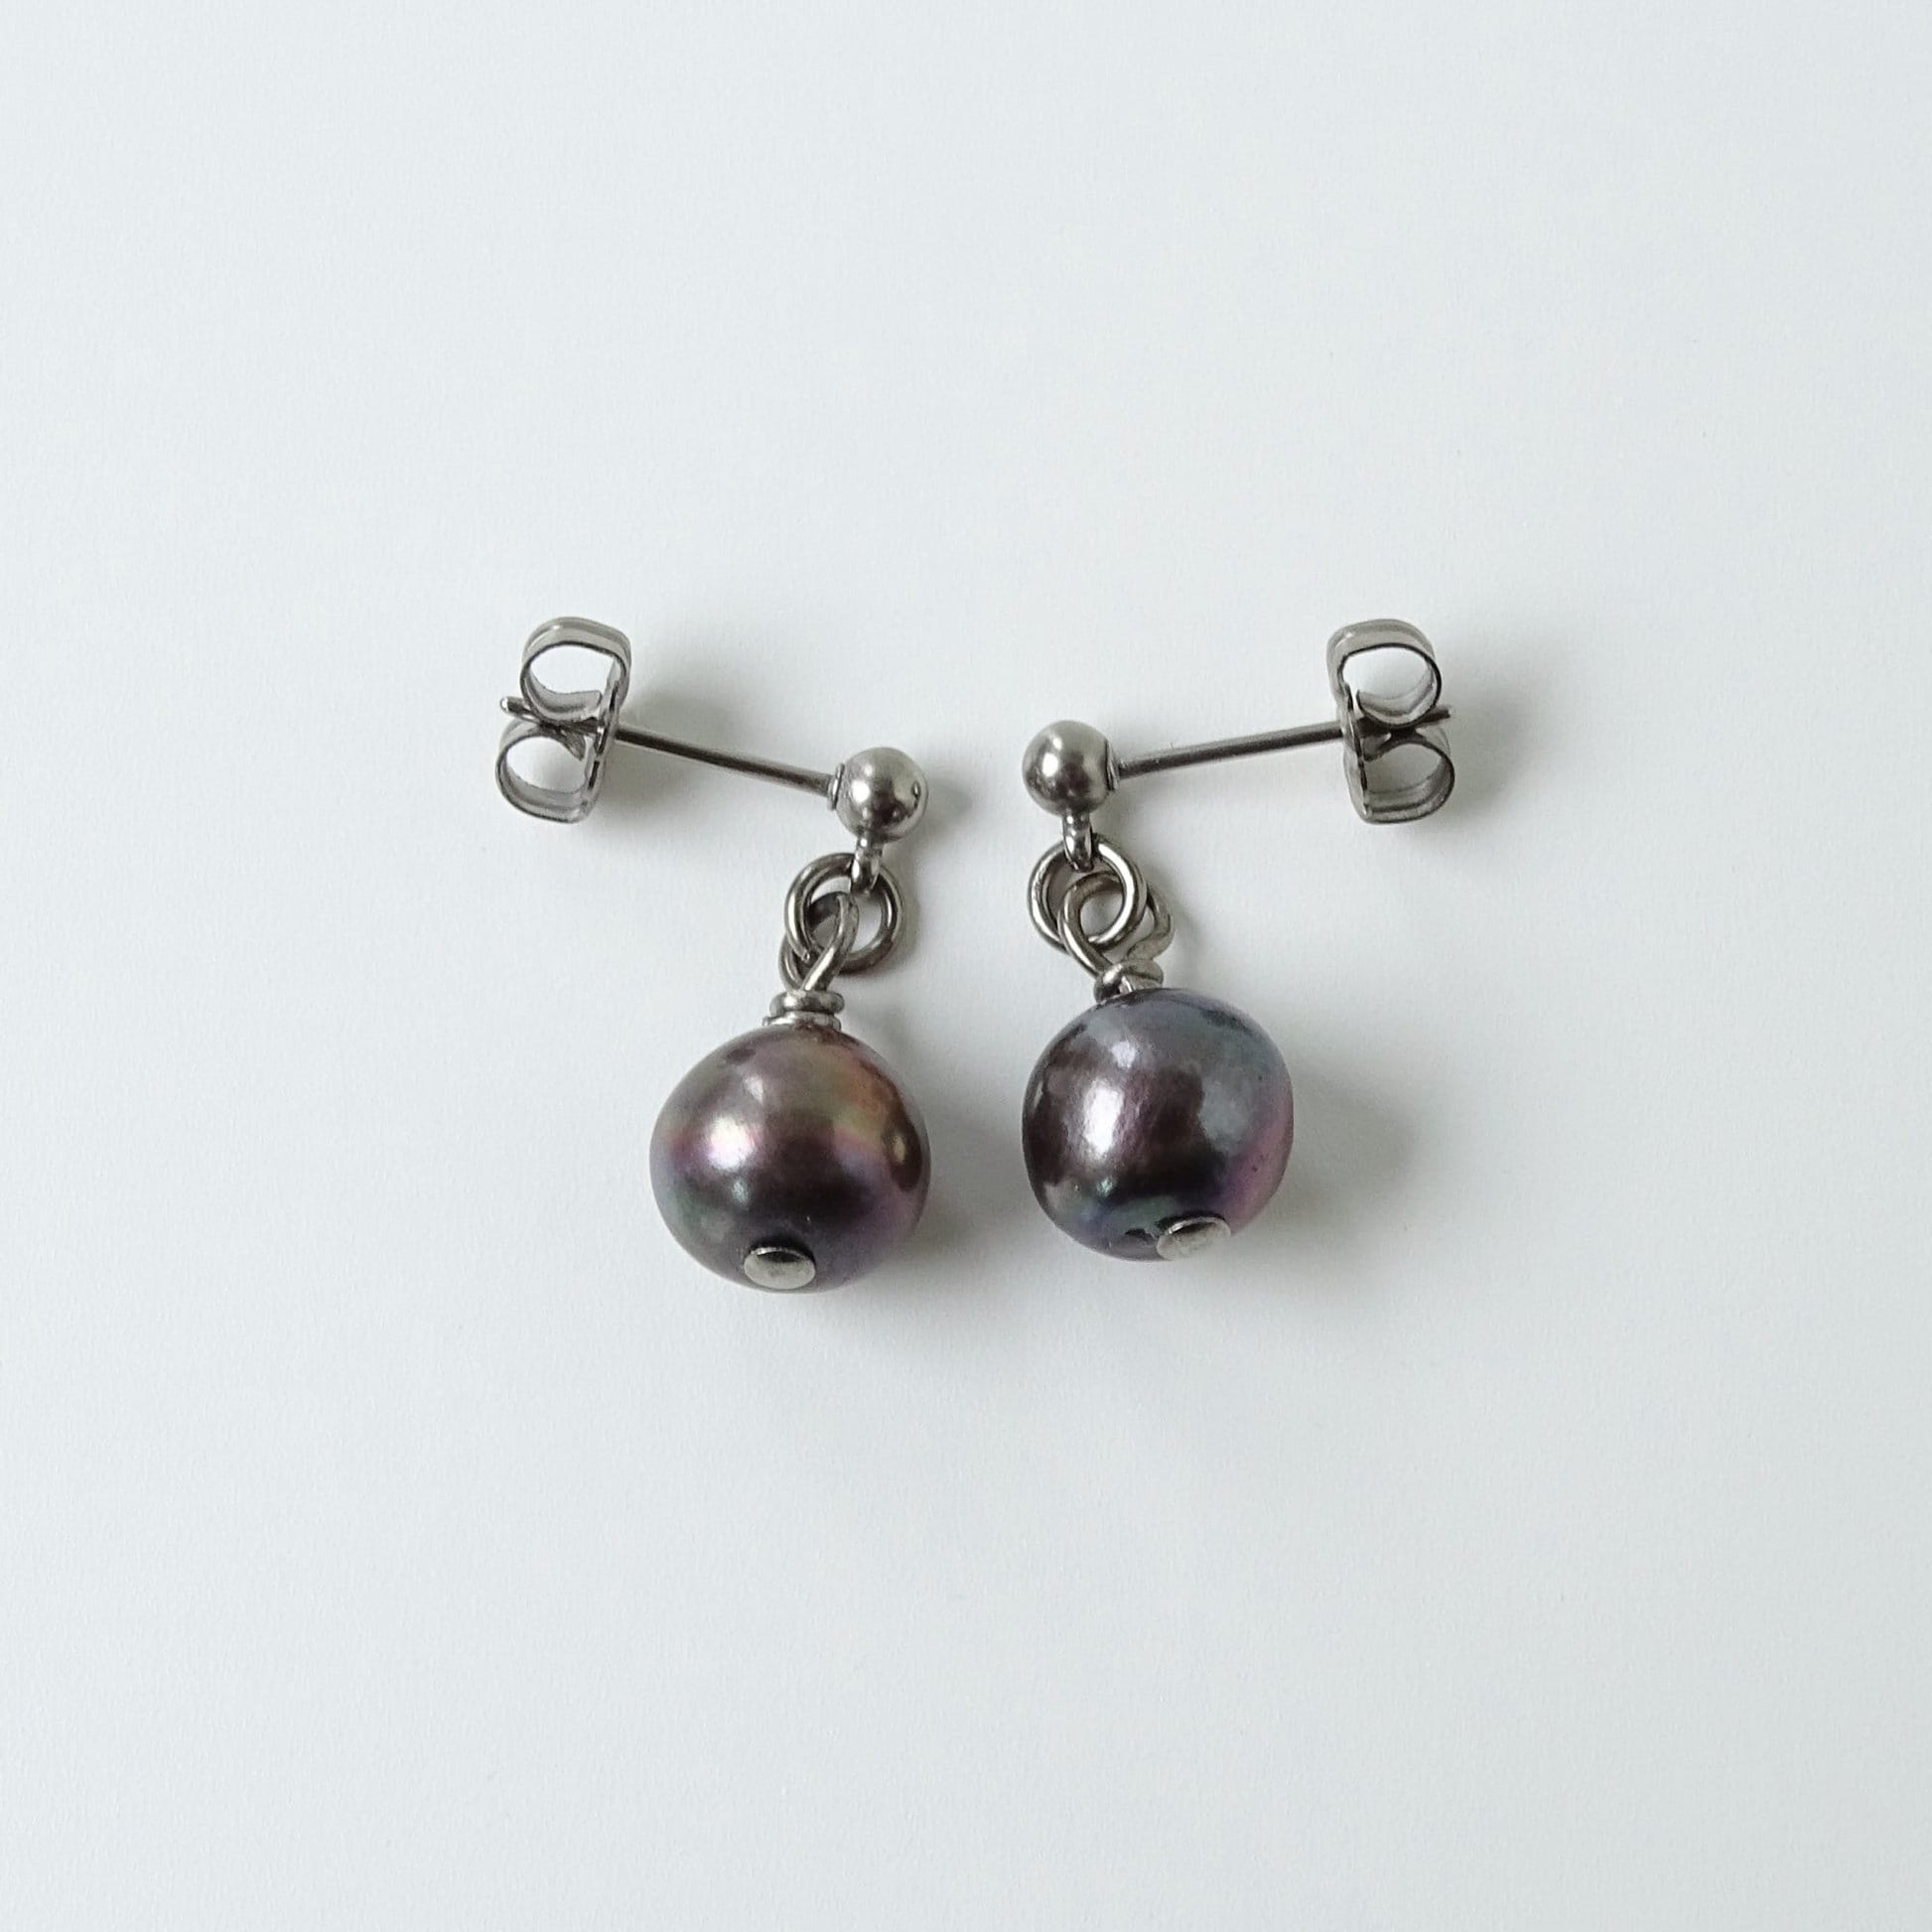 Black Pearl Dangle Ball Stud Earrings, Titanium Posts Earrings for Sensitive Ears, Freshwater Pearls Hypoallergenic Nickel Free Earrings